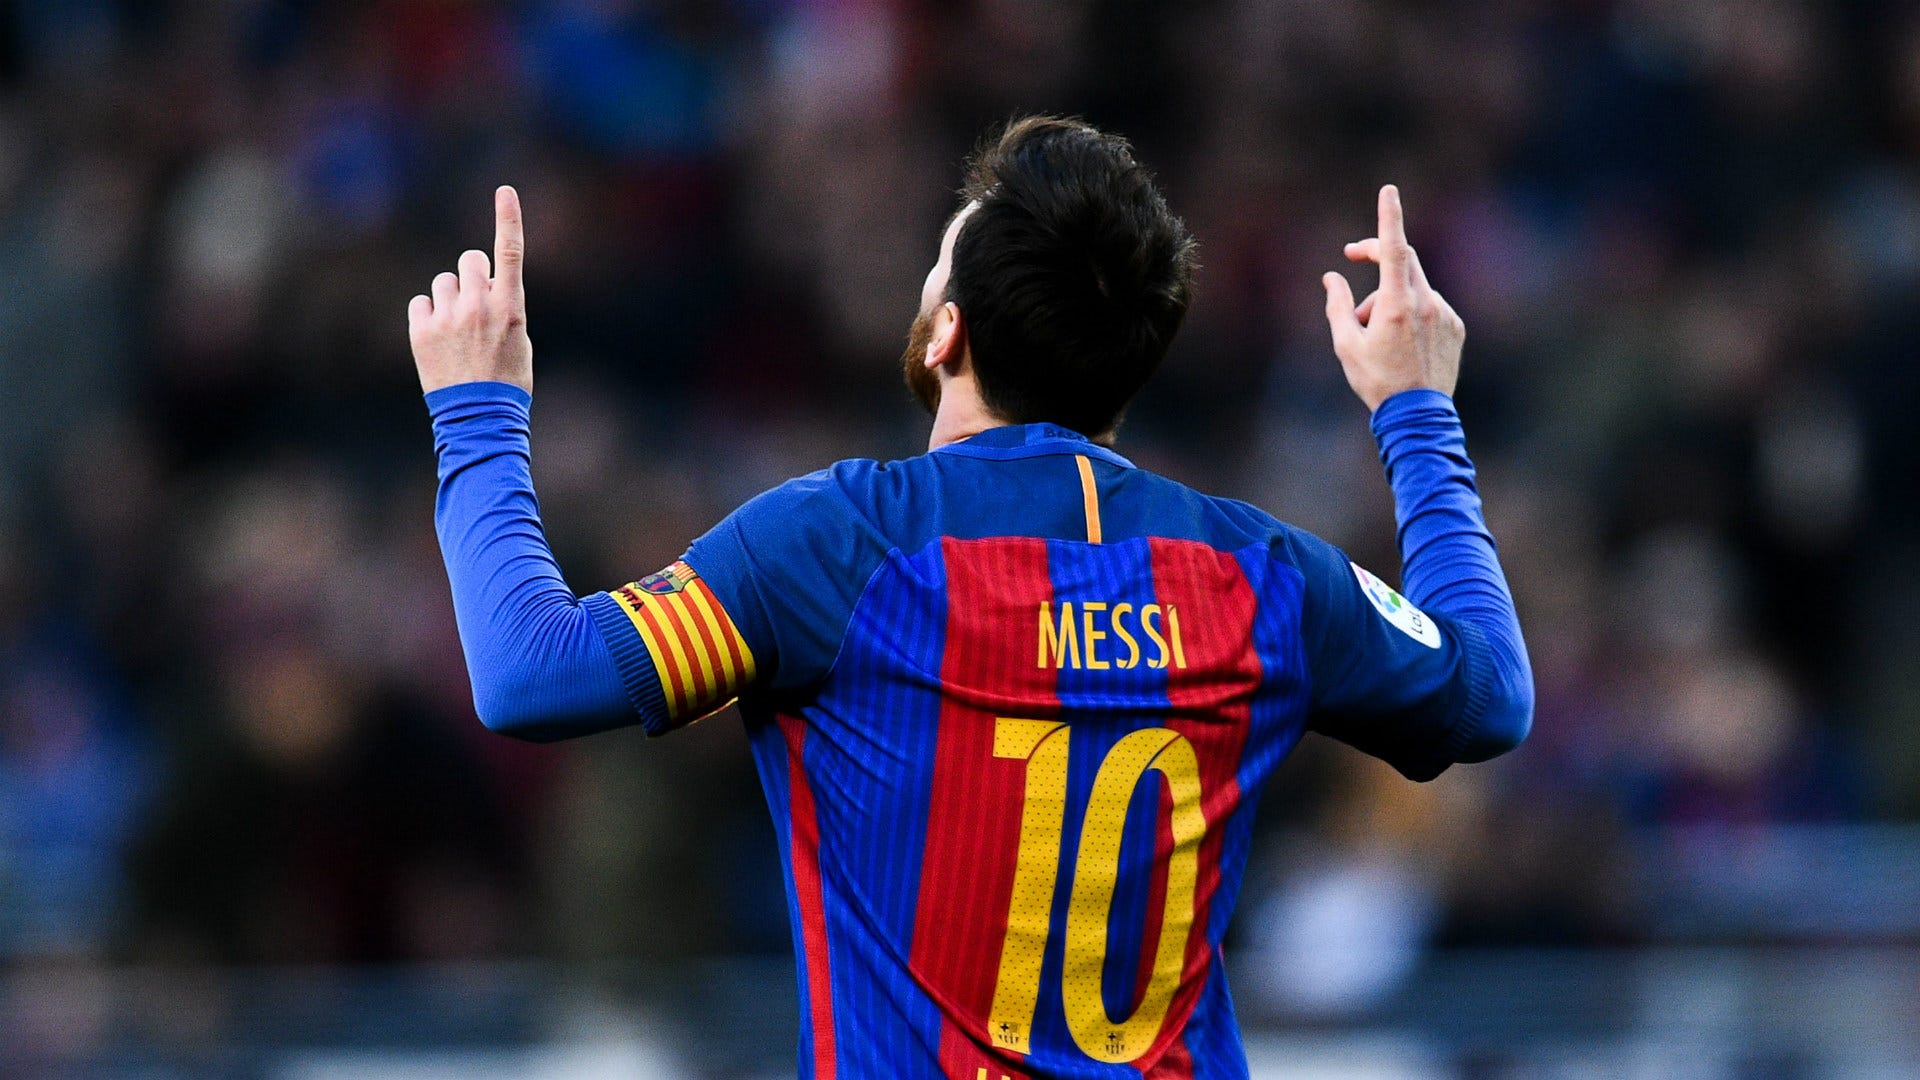 Messi Barcelona contract đang là chủ đề nóng của giới bóng đá thế giới suốt mấy tháng vừa qua. Hãy chiêm ngưỡng những hình ảnh liên quan đến Messi và hợp đồng của anh với đội bóng Barcelona thông qua hình nền độc đáo này. Bức ảnh này sẽ giúp bạn hiểu rõ hơn về sự nghiệp của Messi và tạm biệt được với những tin đồn hoang đường.